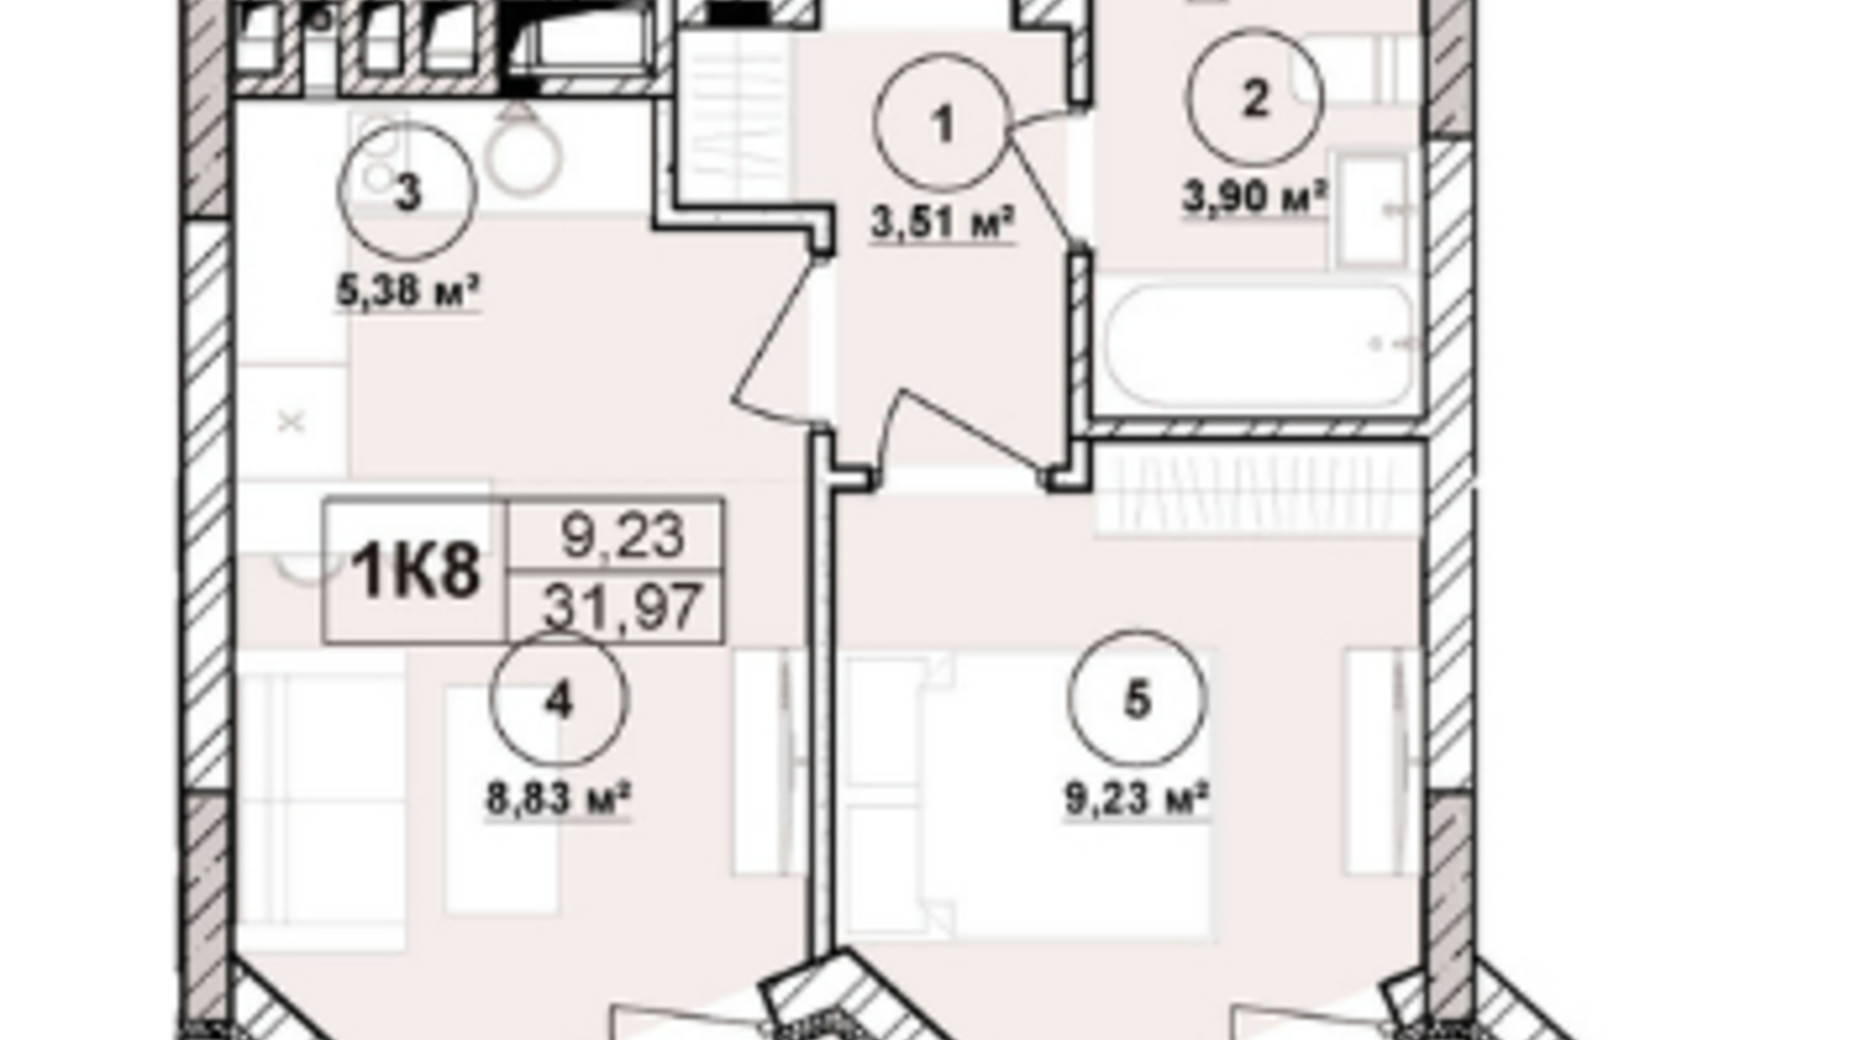 Планировка апартаментов в ЖК Milltown 31.97 м², фото 673234